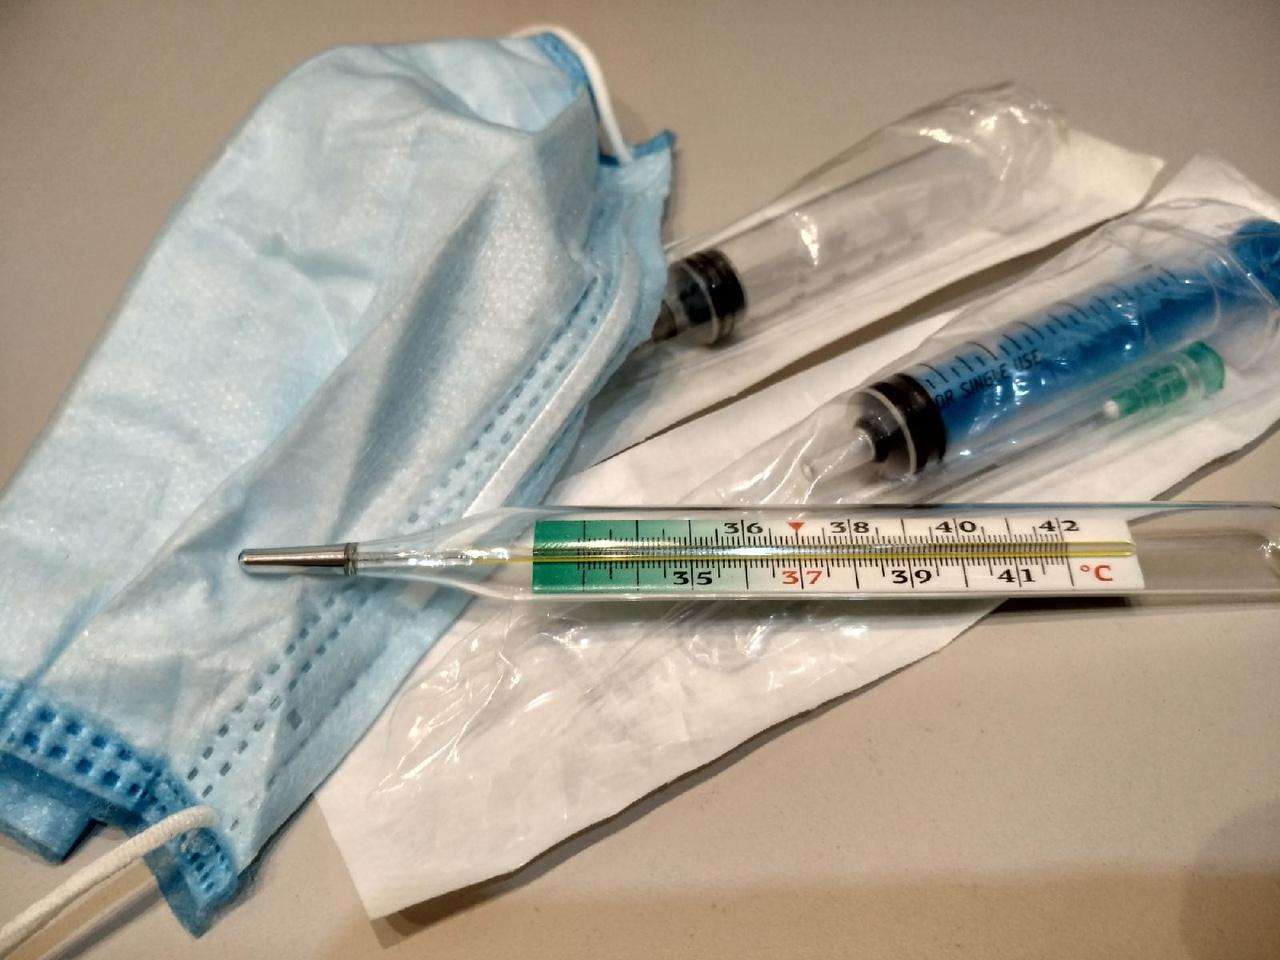 2782 жителя Бердска уже прошли вакцинацию от гриппа